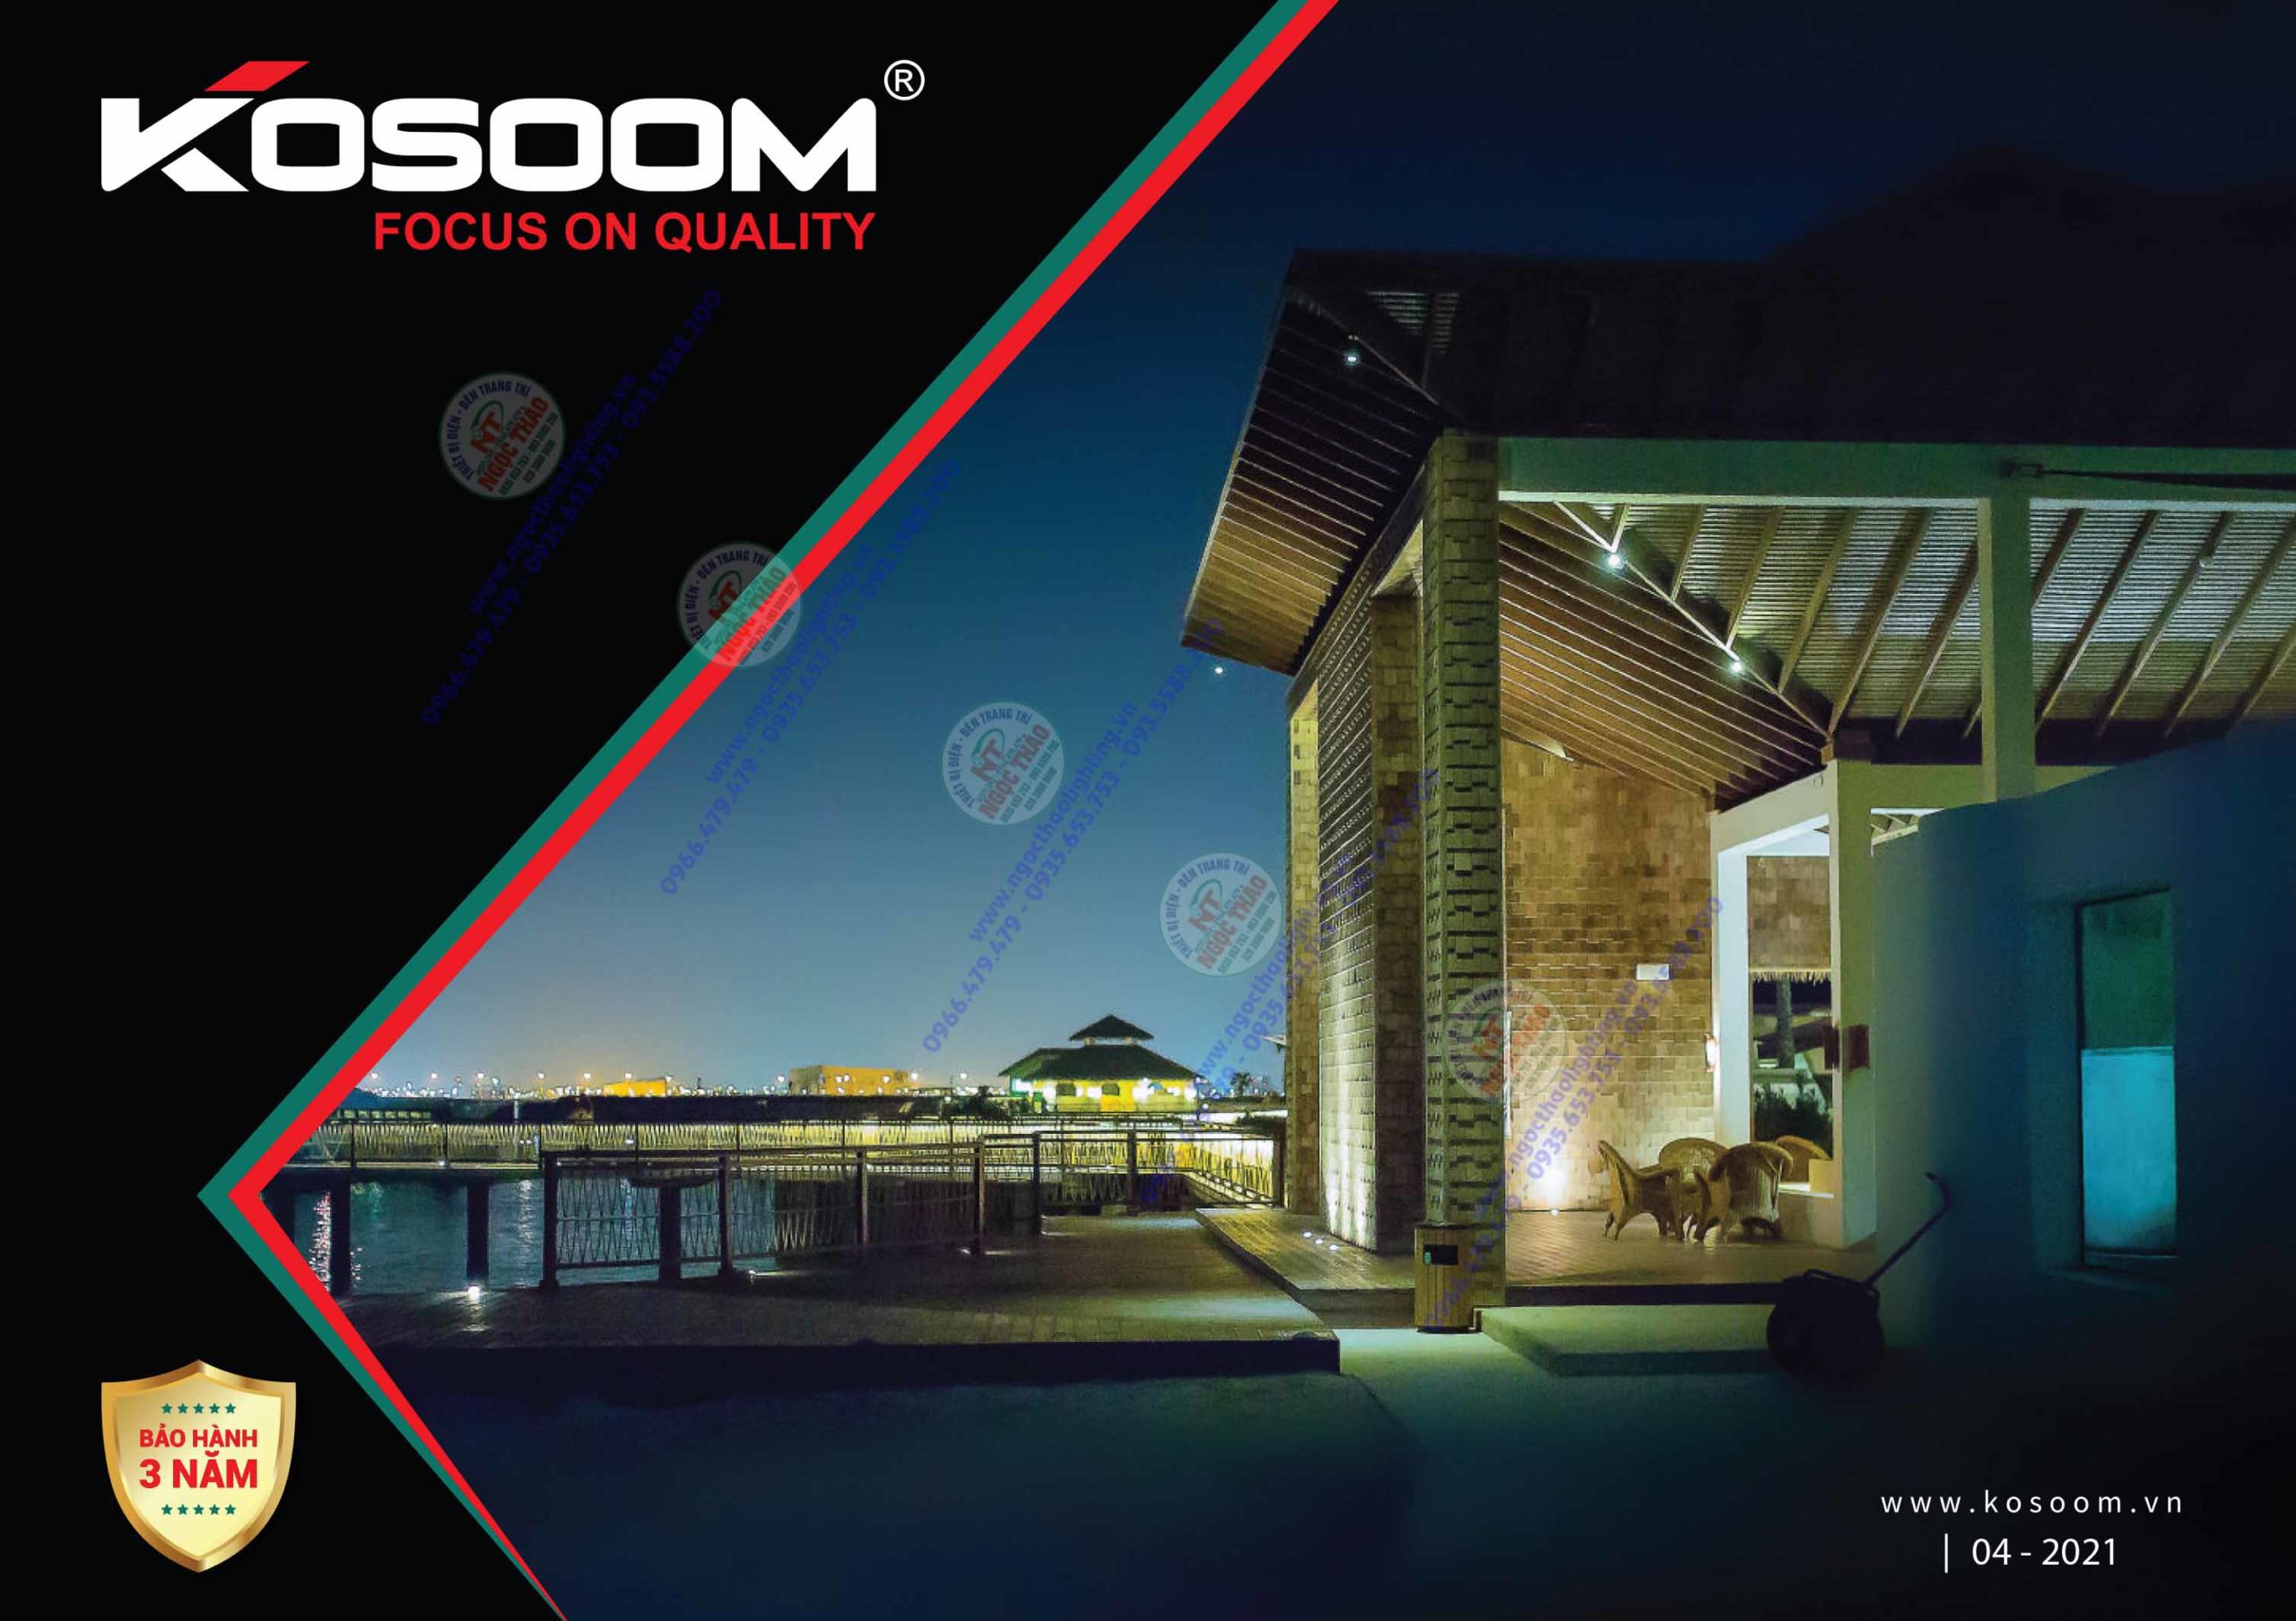 BẢNG BÁO GIÁ VÀ CATALOGUE ĐÈN LED KOSOOM Lighting MỚI NHẤT NĂM 2021